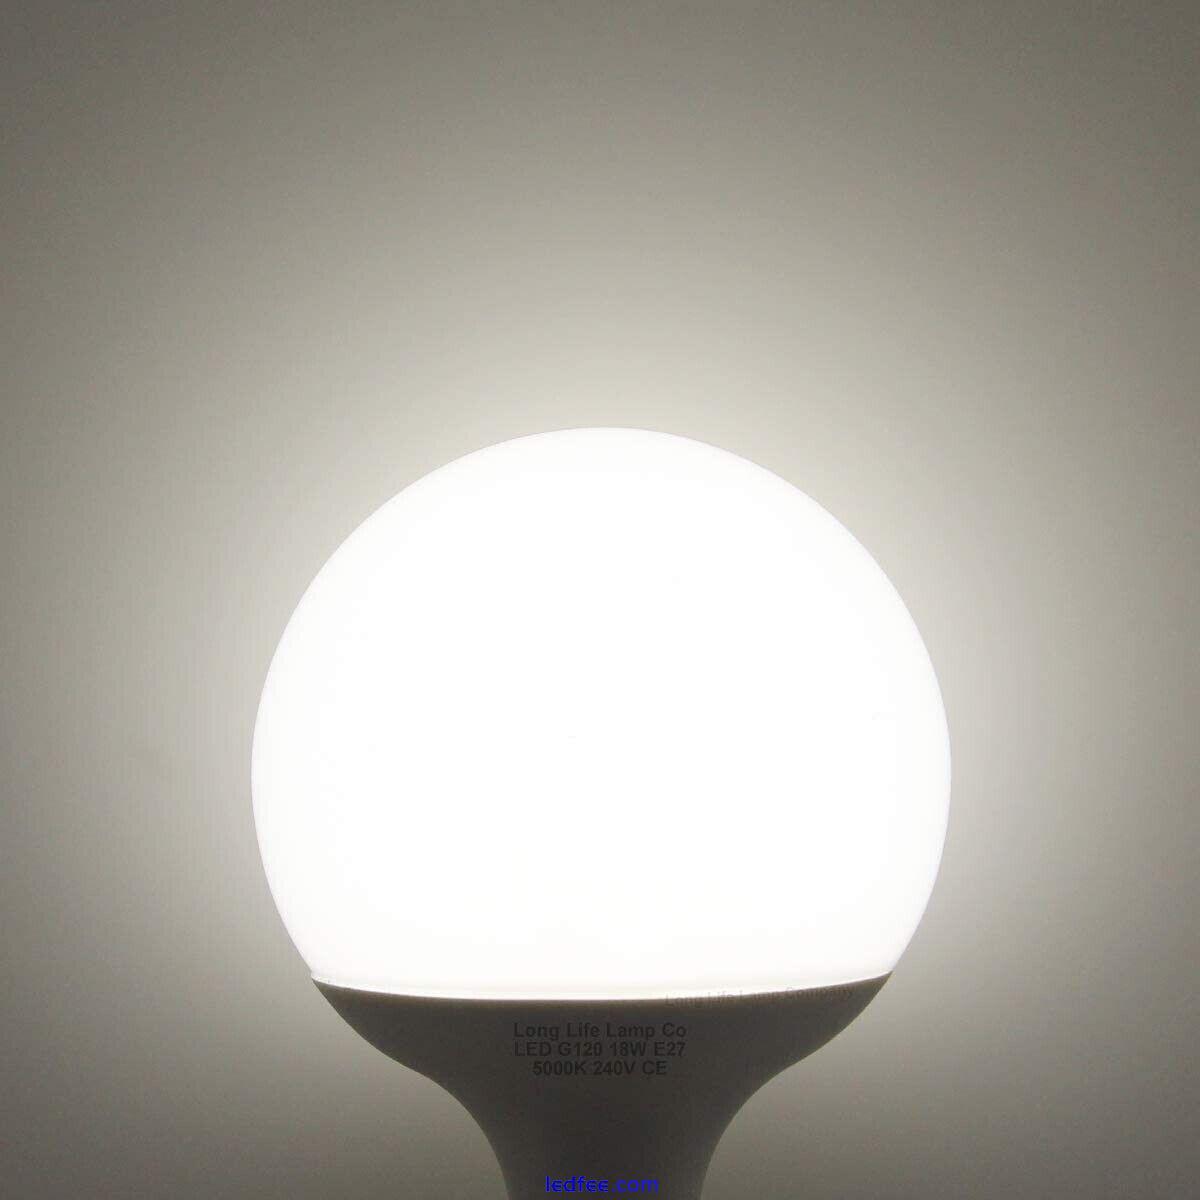 BTEK E27 15W Global Large Led Light Bulb WARM WHITE  0 